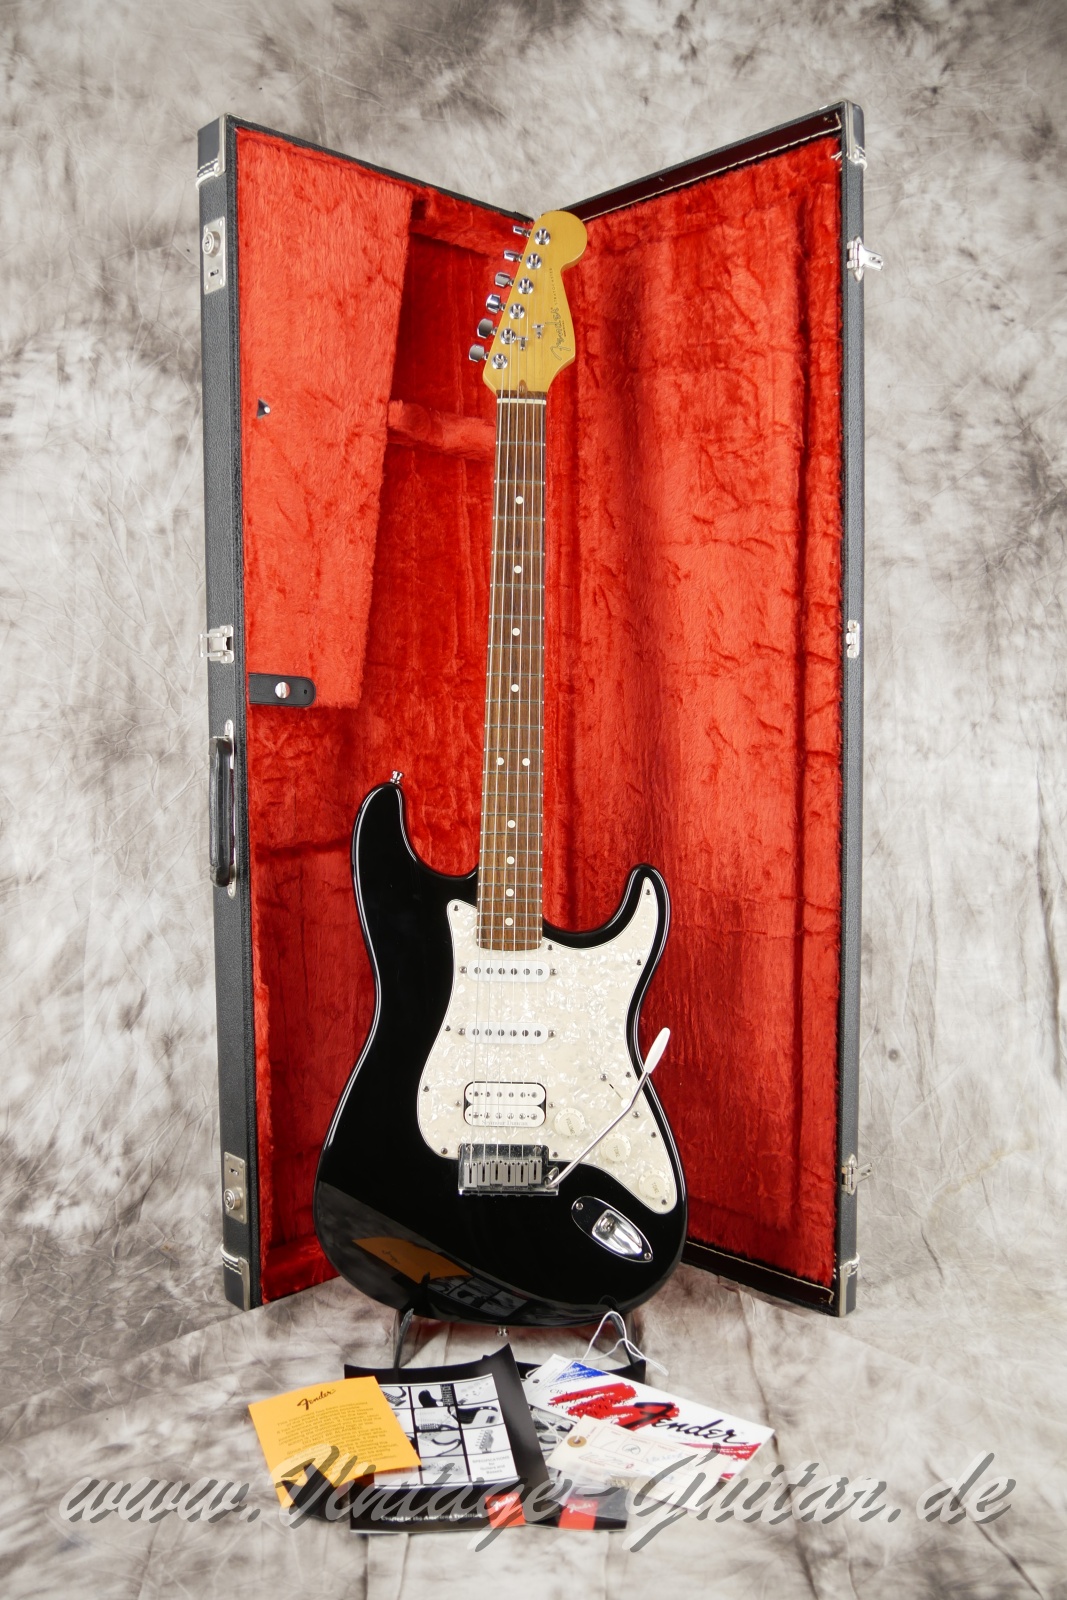 Fender_Stratocaster_US_Lonestar_1997_original_case_black_humbucker-015.jpg